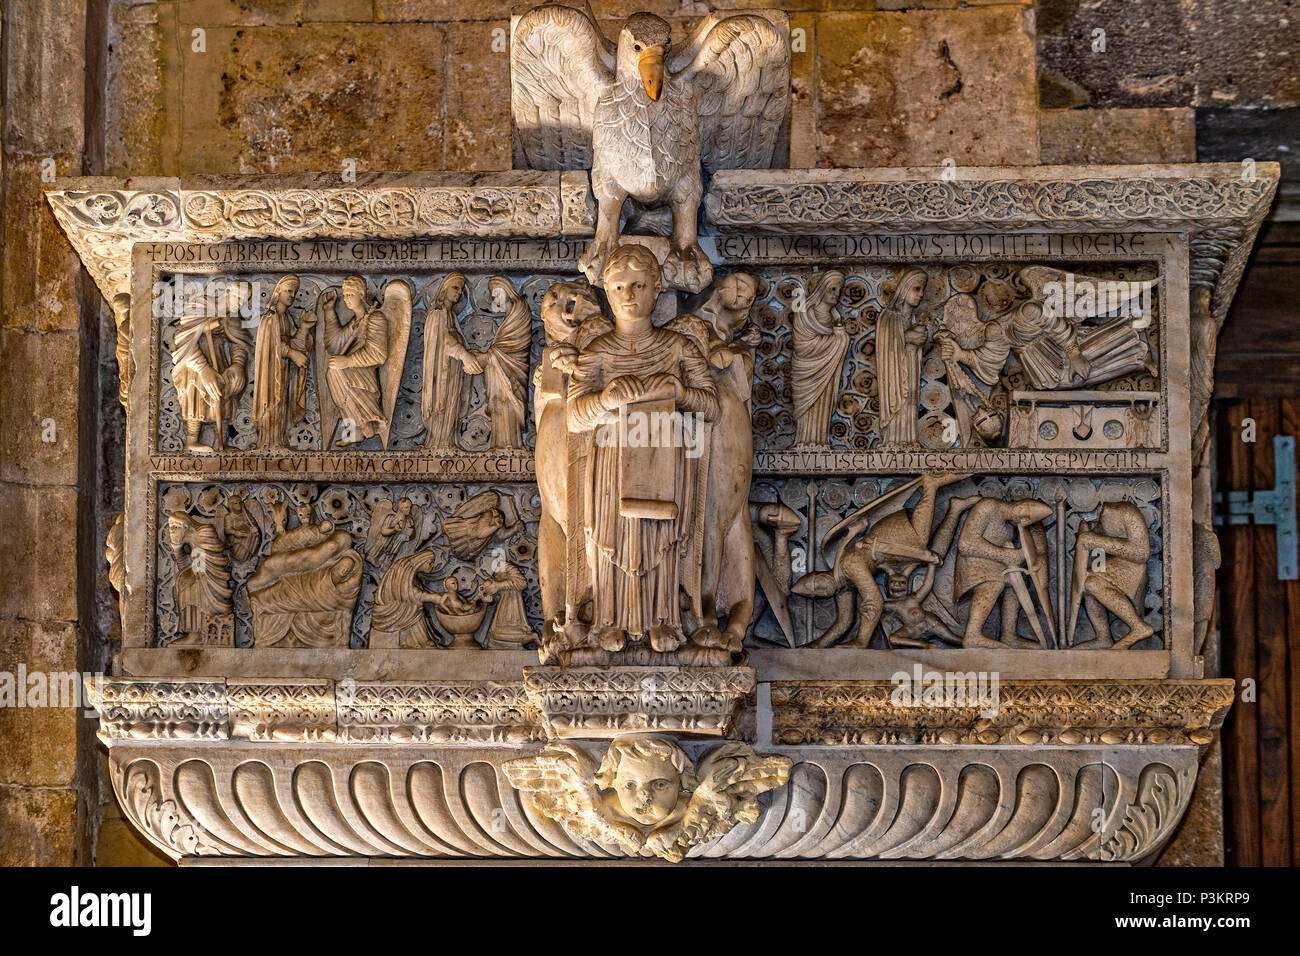 Italien Sardinien Cagliari Castello (Casteddu) Bezirk - Kathedrale Santa Maria - Ambos oder pupits - Der Maestro Guglielmo machte es für die Kathedrale von Pisa zwischen 1154 und 1162; er wurde in der Kathedrale von Cagliari 1312 übertragen. Im 17. Jahrhundert war es in zwei Ambos zerlegt, eine Situation, die heute noch sichtbar. Stockfoto